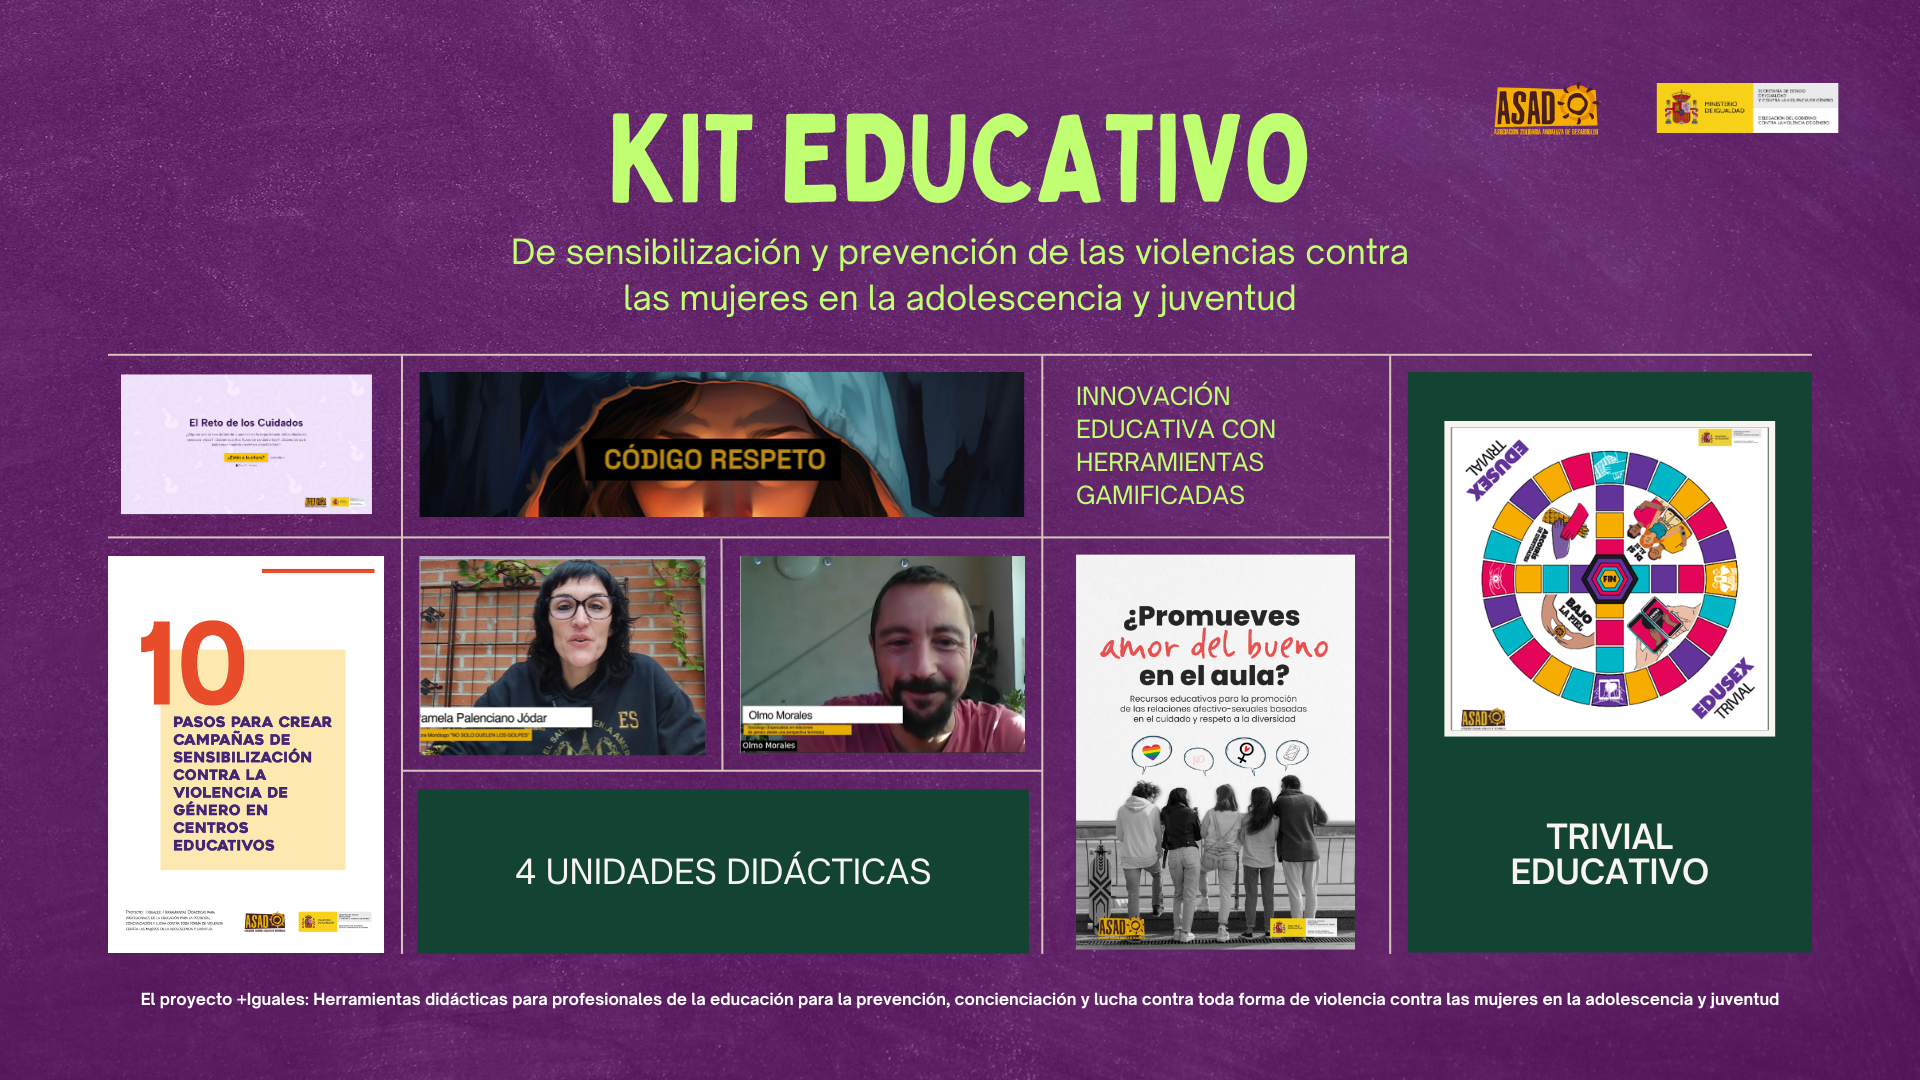 Kit educativo de sensibilización y prevención de las violencias contra las mujeres en la adolescencia y juventud